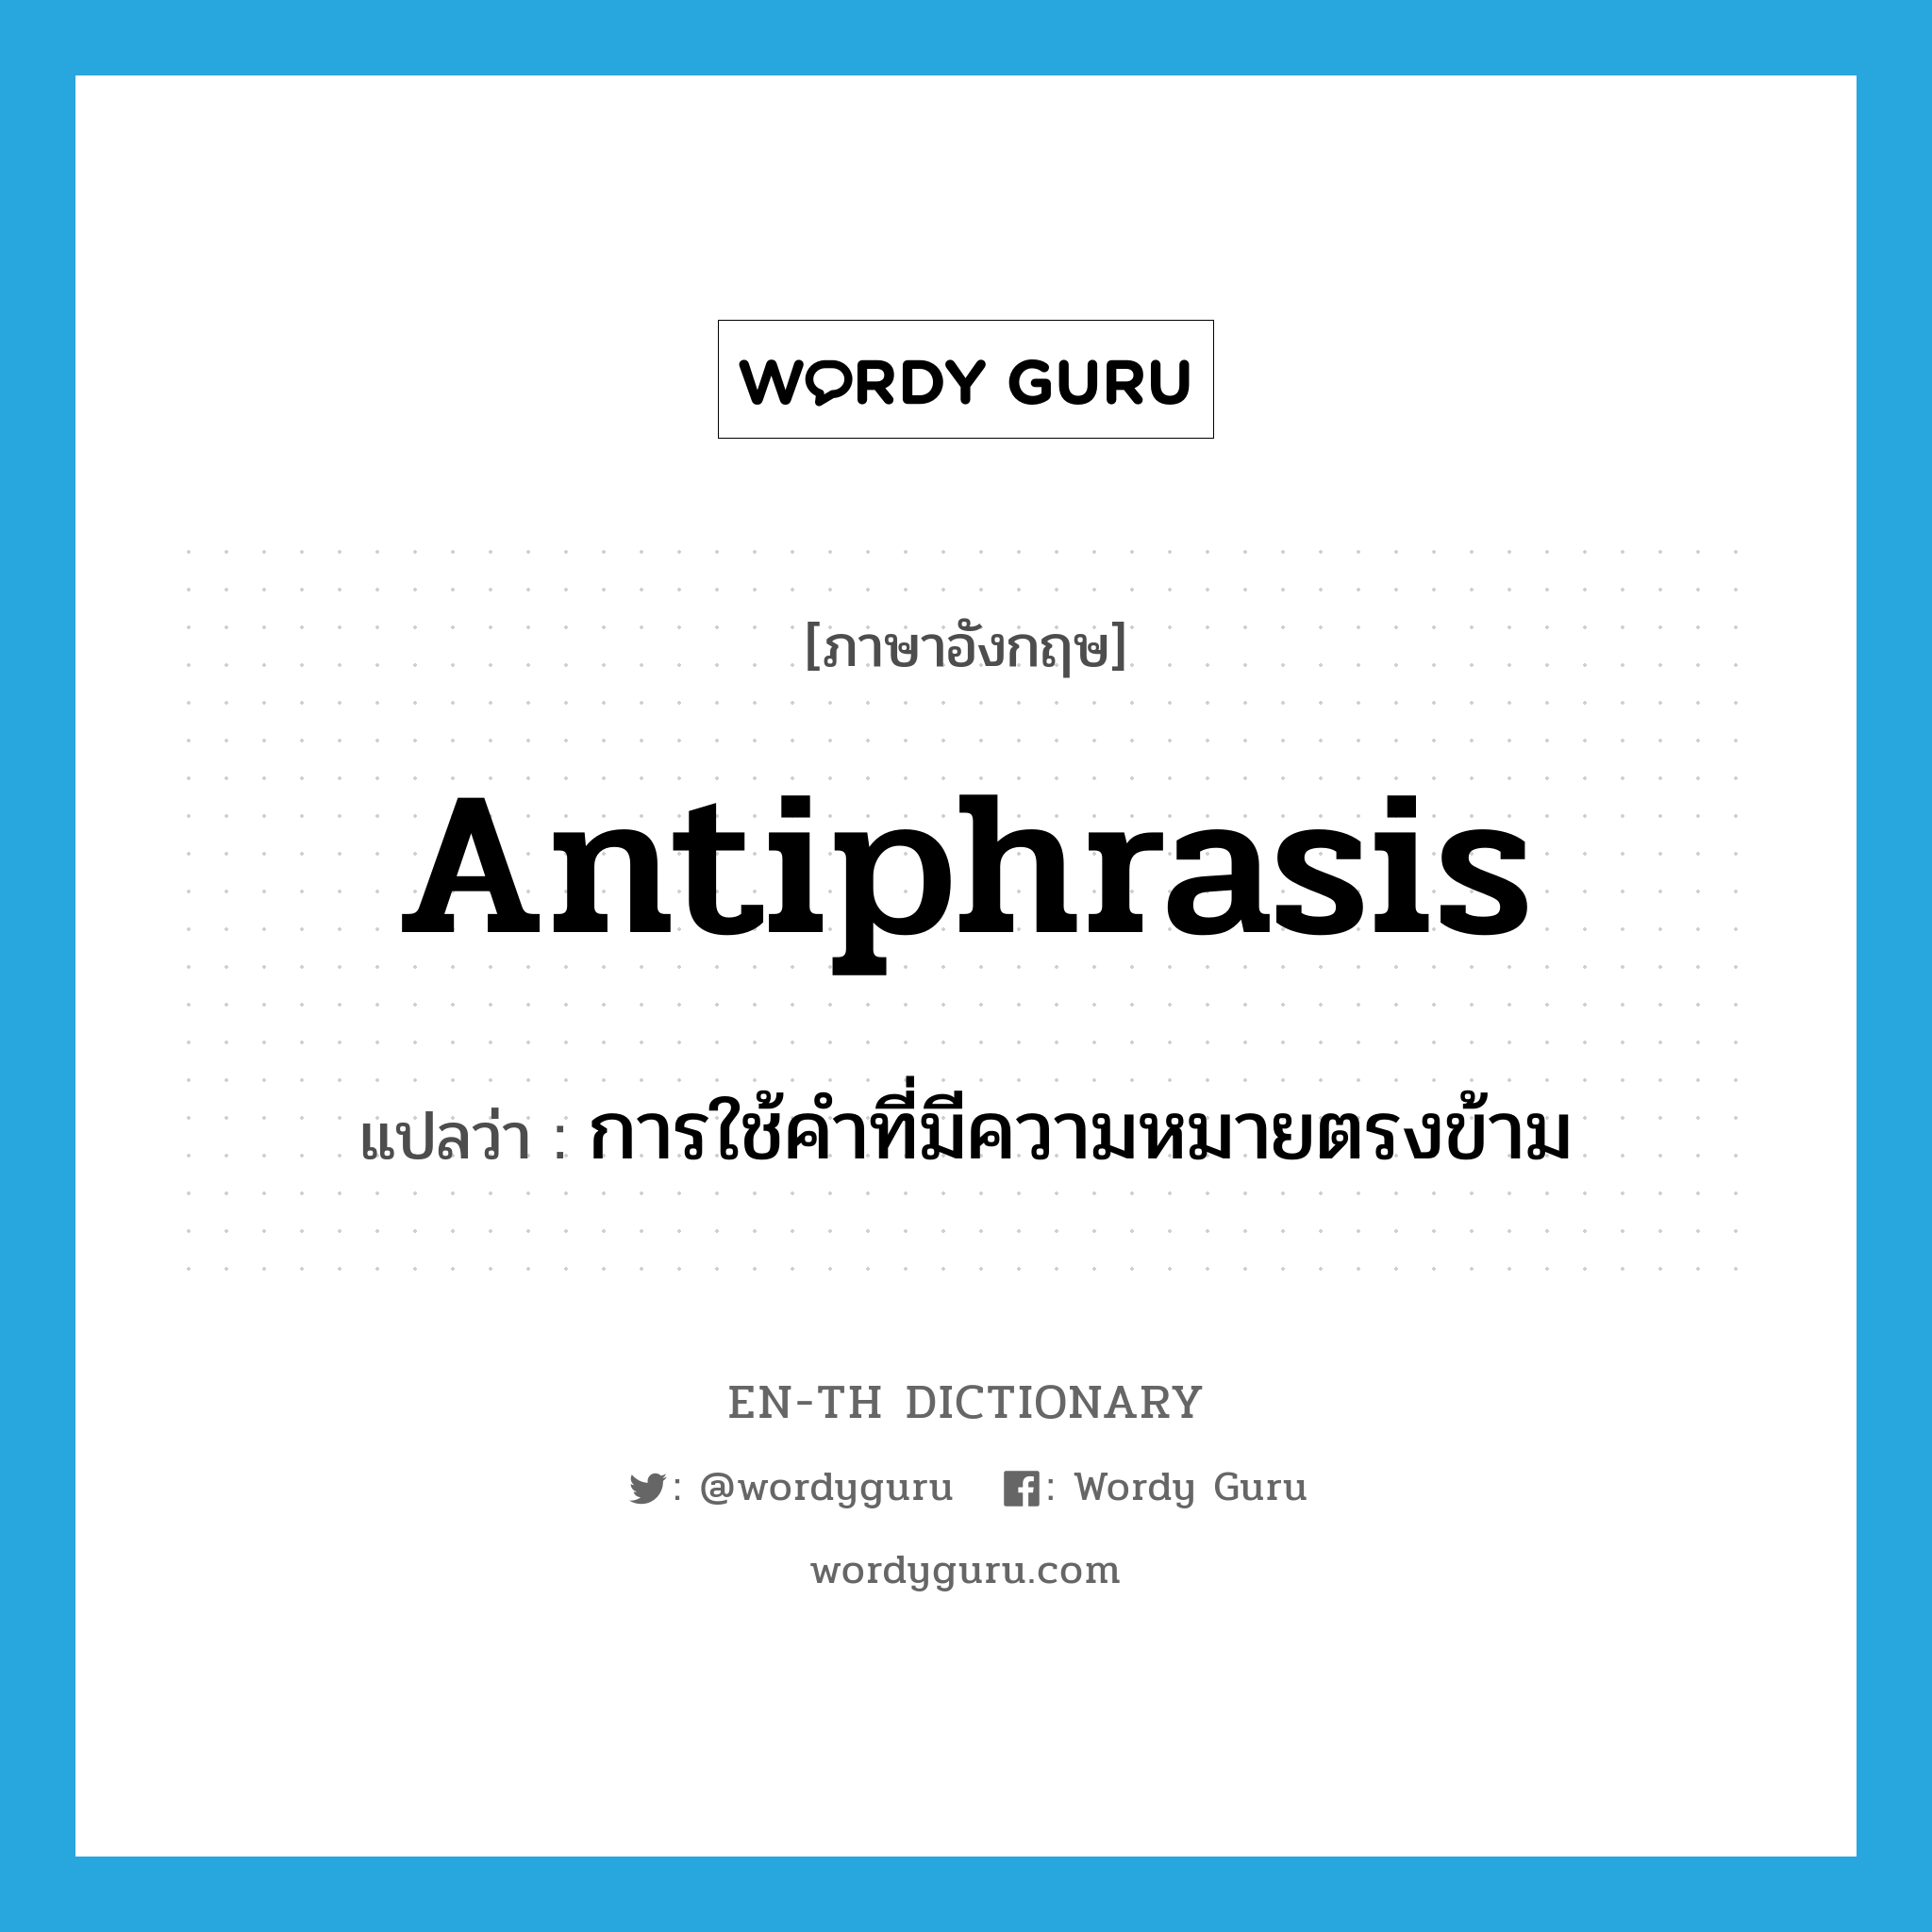 การใช้คำที่มีความหมายตรงข้าม ภาษาอังกฤษ?, คำศัพท์ภาษาอังกฤษ การใช้คำที่มีความหมายตรงข้าม แปลว่า antiphrasis ประเภท N หมวด N